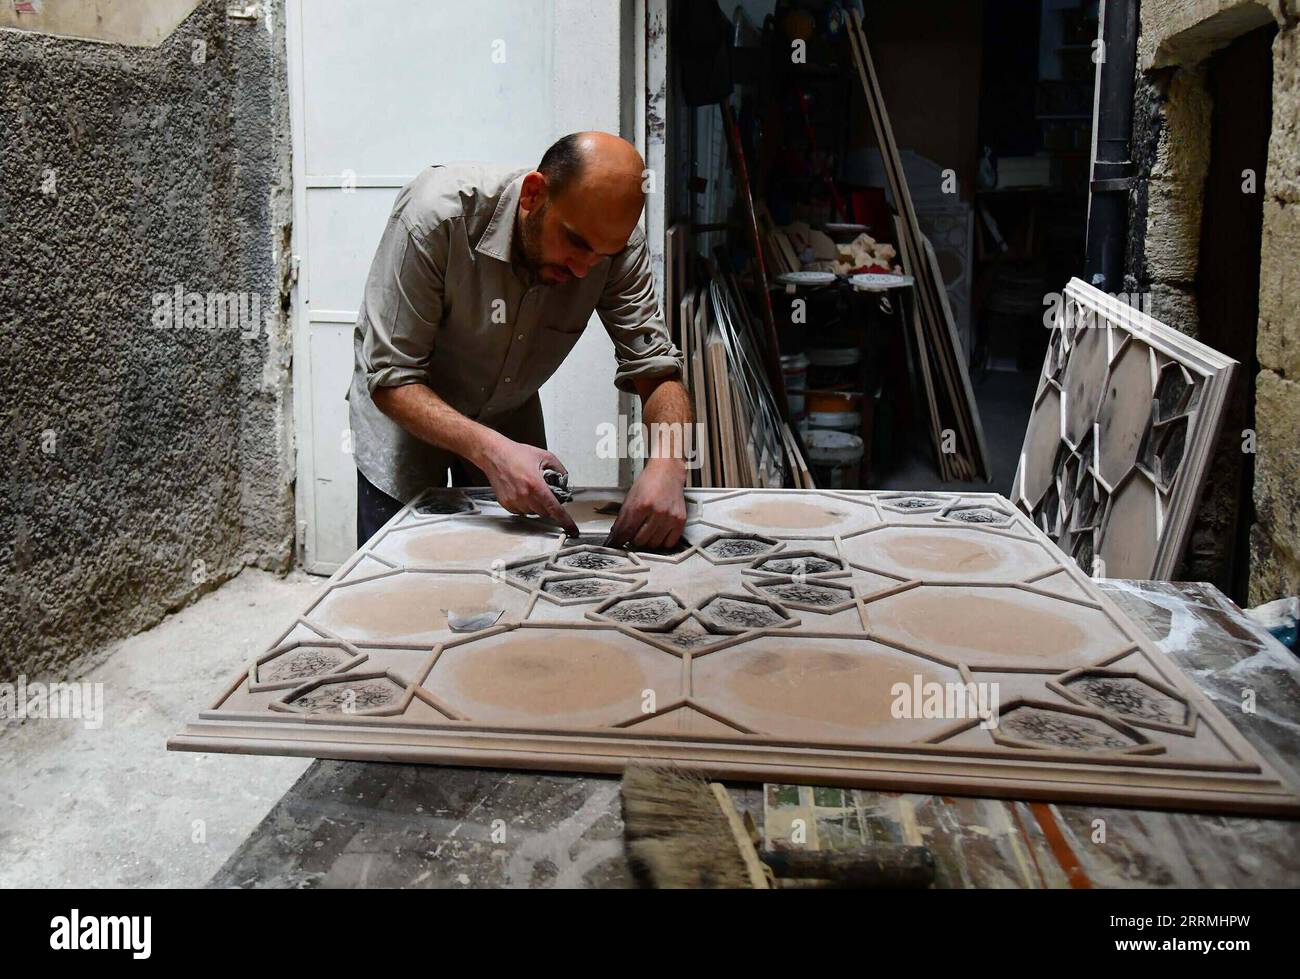 221101 -- DAMASCO, 1 novembre 2022 -- Un artigiano siriano applica una pasta viscosa a motivi pre-disegnati su una tavola per creare una decorazione siriana di pareti e soffitti nota come pittura di Damascene o Ajami in un laboratorio a Damasco, Siria, 31 ottobre 2022. Ajami è un artigianato tradizionale utilizzato per la decorazione interna di vecchie case in Siria foto di /Xinhua SIRIA-DAMASCO-DAMASCENE DIPINTO AmmarxSafarjalani PUBLICATIONxNOTxINxCHN Foto Stock